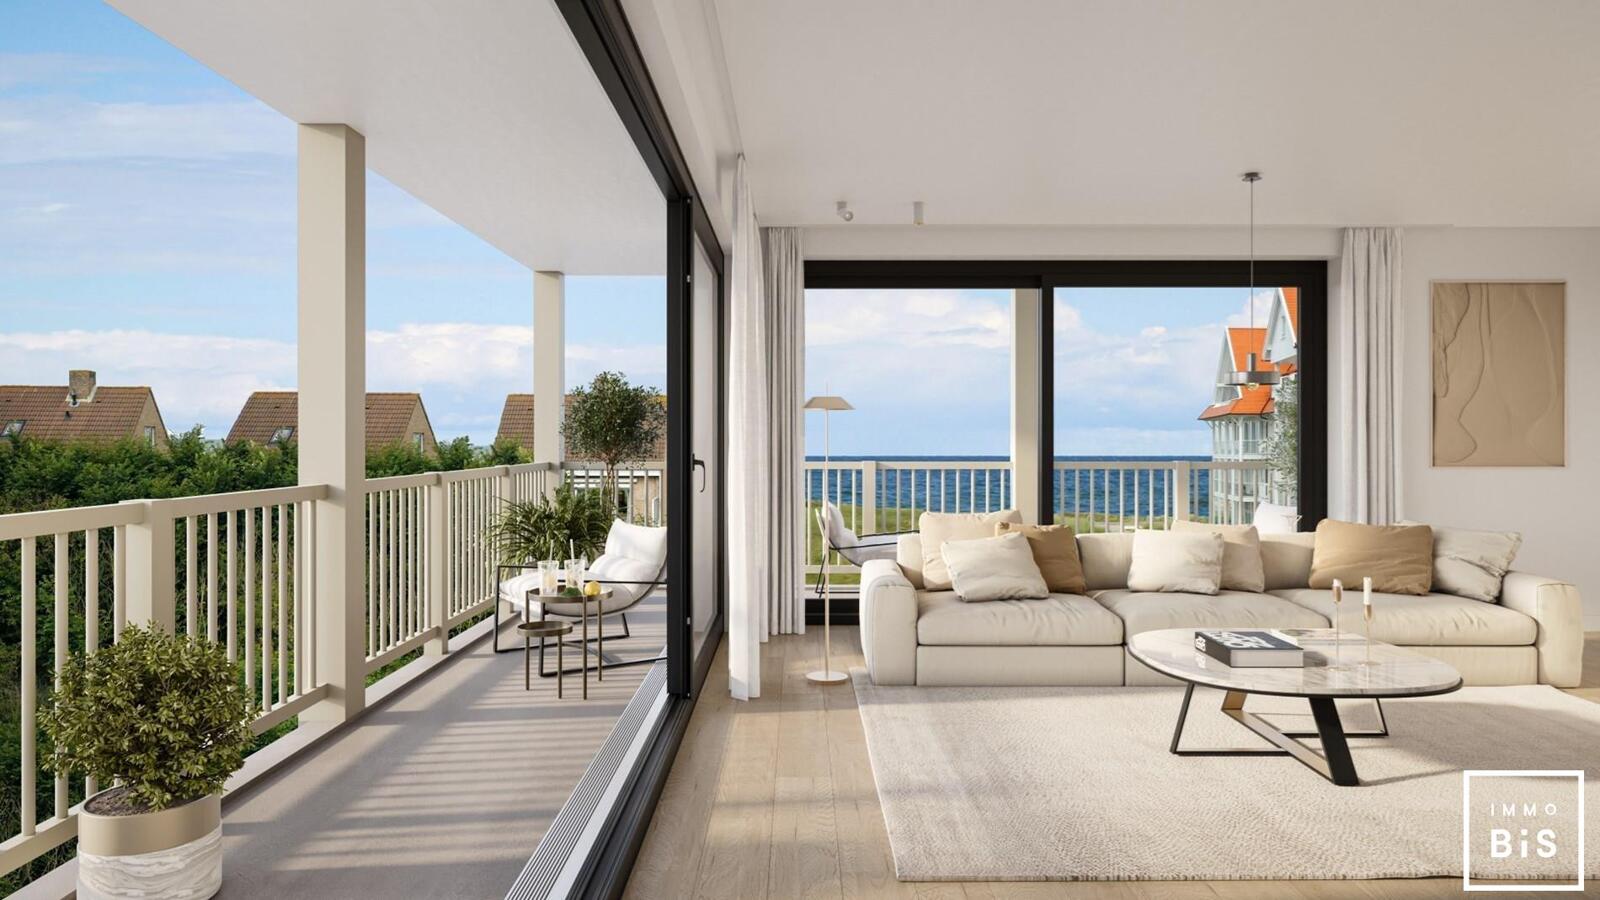 " Appartement villa moderne avec terrasse sur la Digue à Cadzand - Résidence Duinhof-Noord " 16